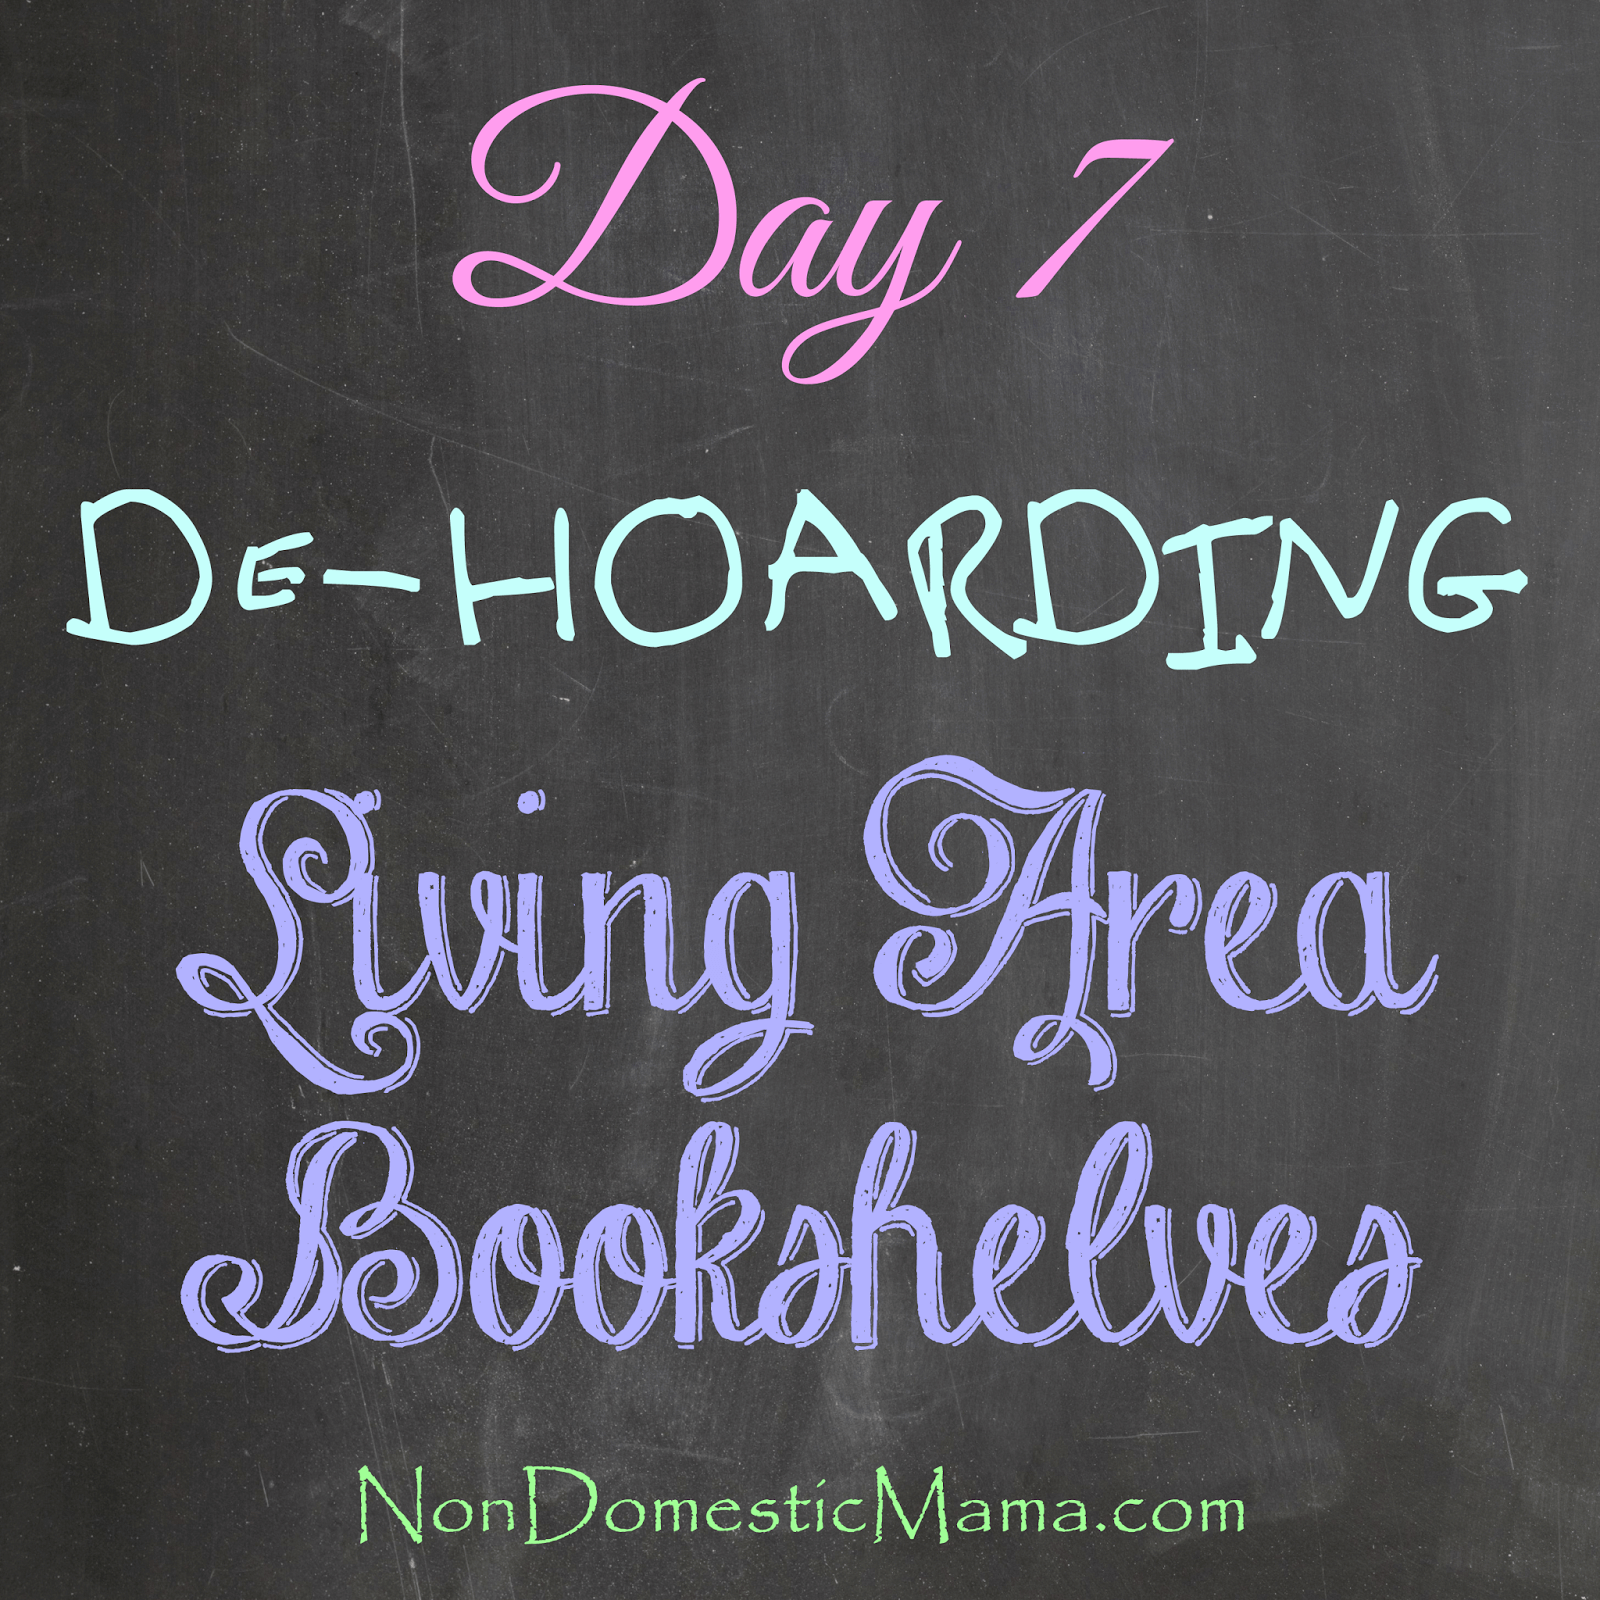 {Day 7} Living Area Bookshelves - 31 Days of De-Hoarding #write31days #dehoarding